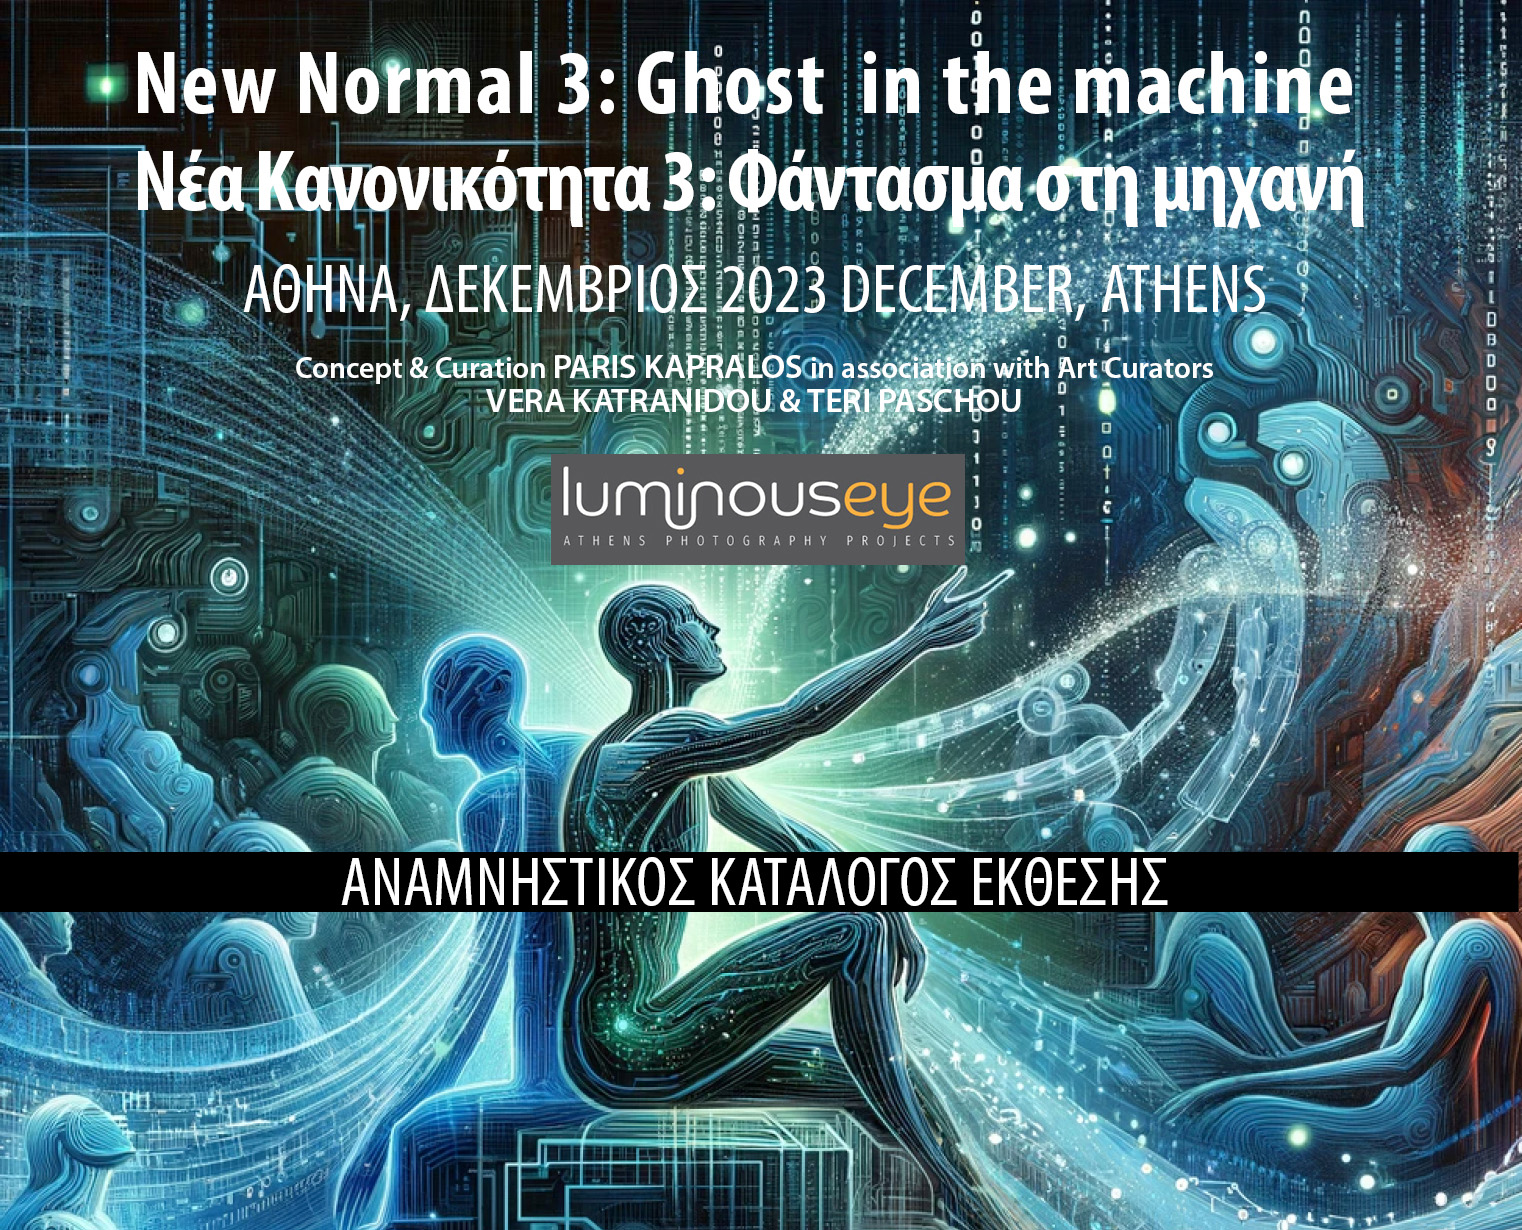 You are currently viewing Νέα Κανονικότητα 3: Φάντασμα στη μηχανή | Διάθεση δίγλωσσου αναμνηστικού καταλόγου